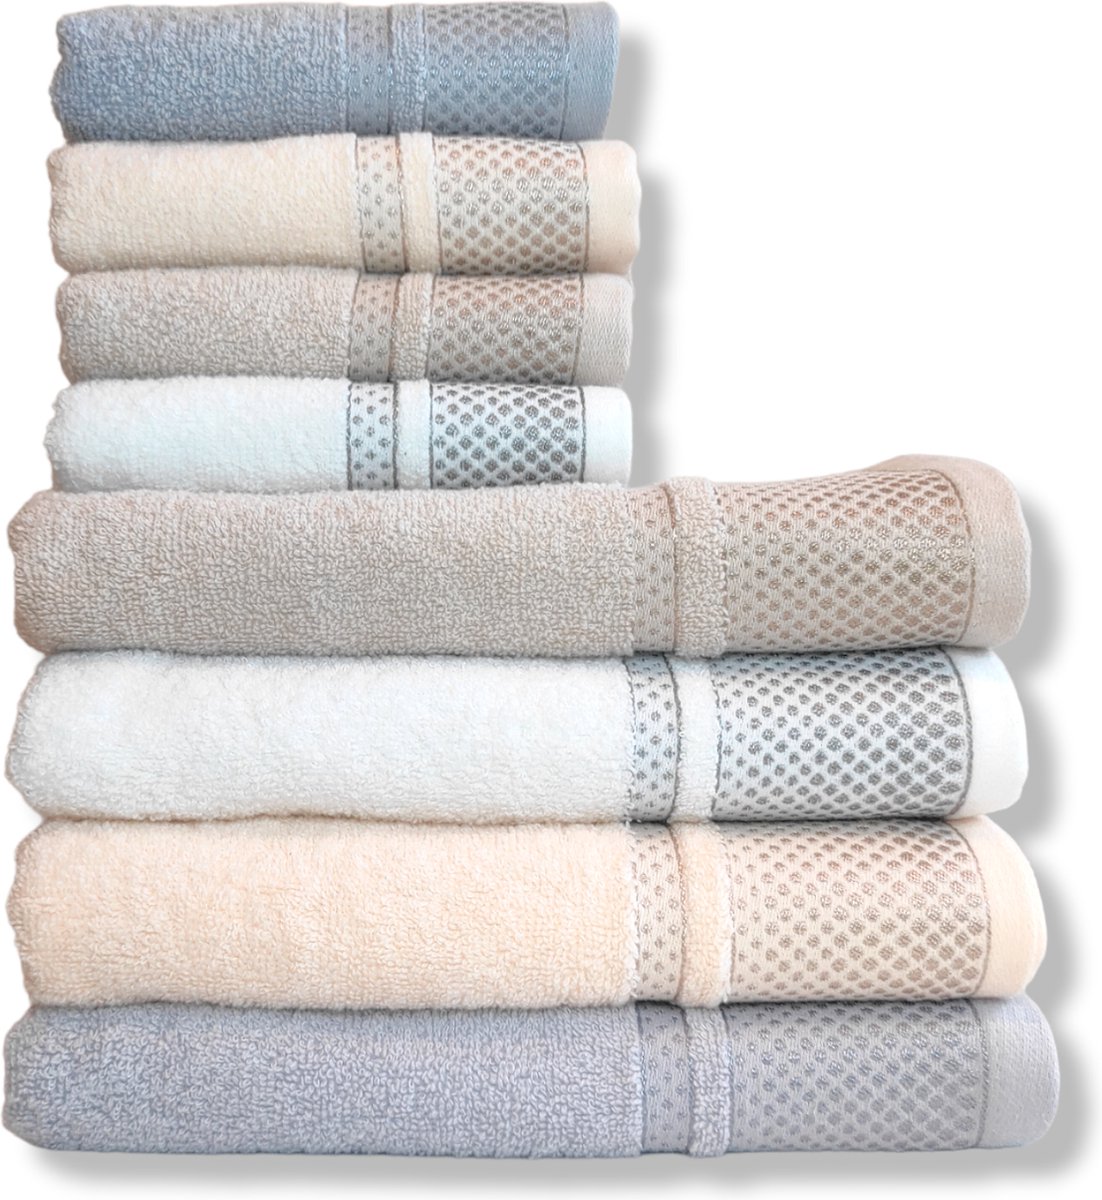 Silk Road textiles handdoek geborduurd 100% katoen handdoek set van 8 bestaat uit 4xhanddoek (50x100cm) + 4xgastendoekje/wasdoek (40x60cm), hotelkwaliteit, zeer absorberend